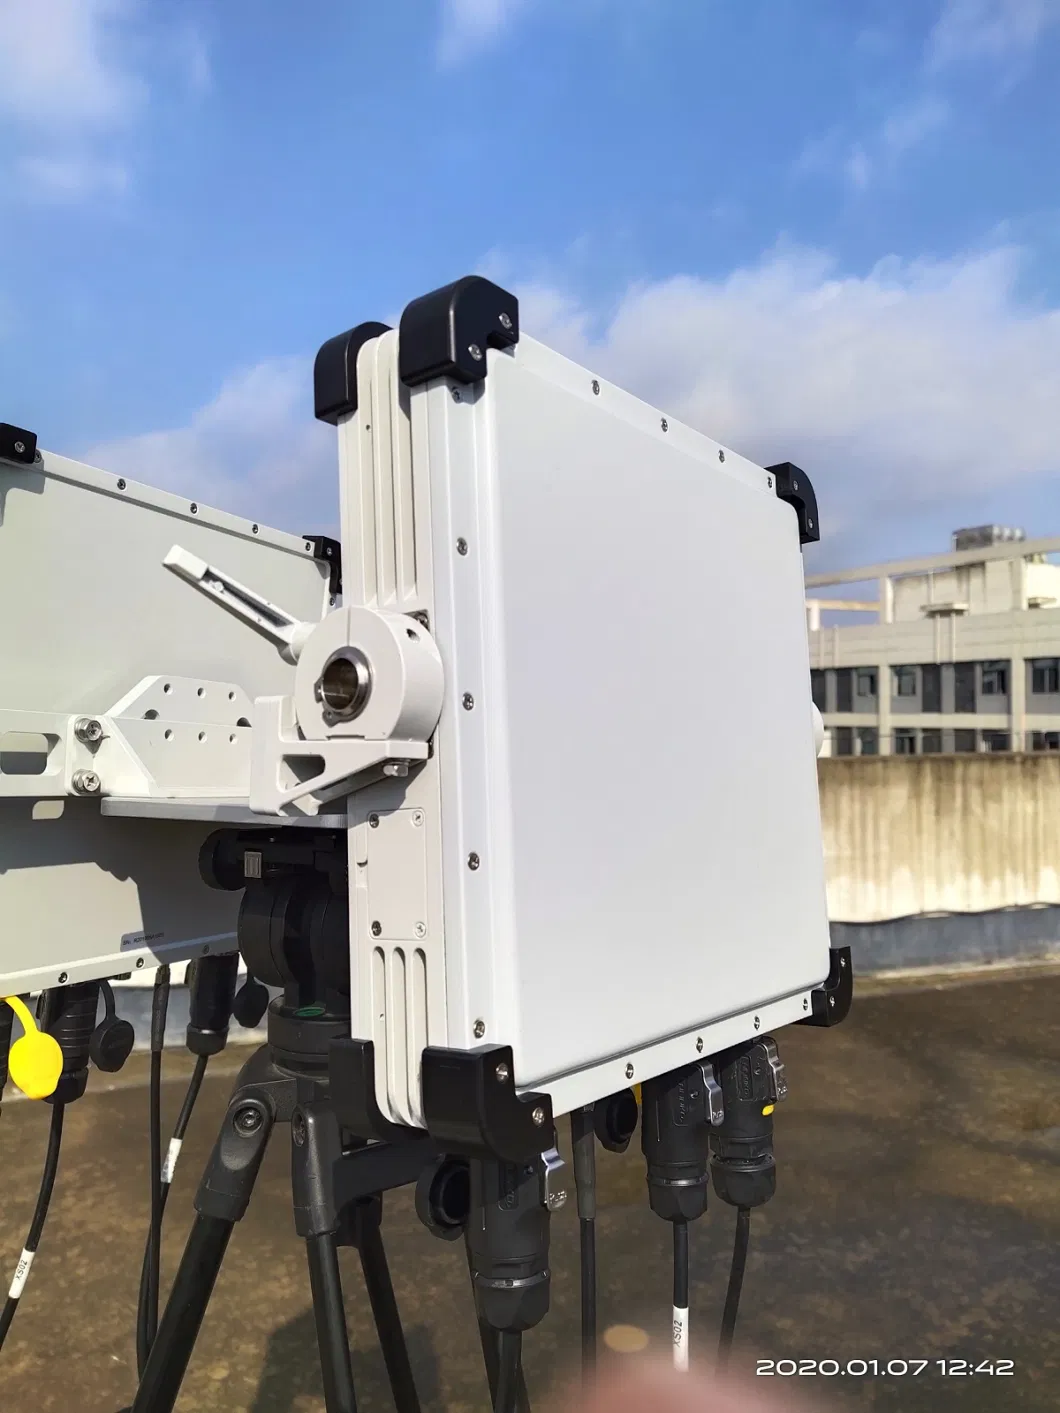 Pulse-Doppler Light-Weight Compact Ground Surveillance Radar